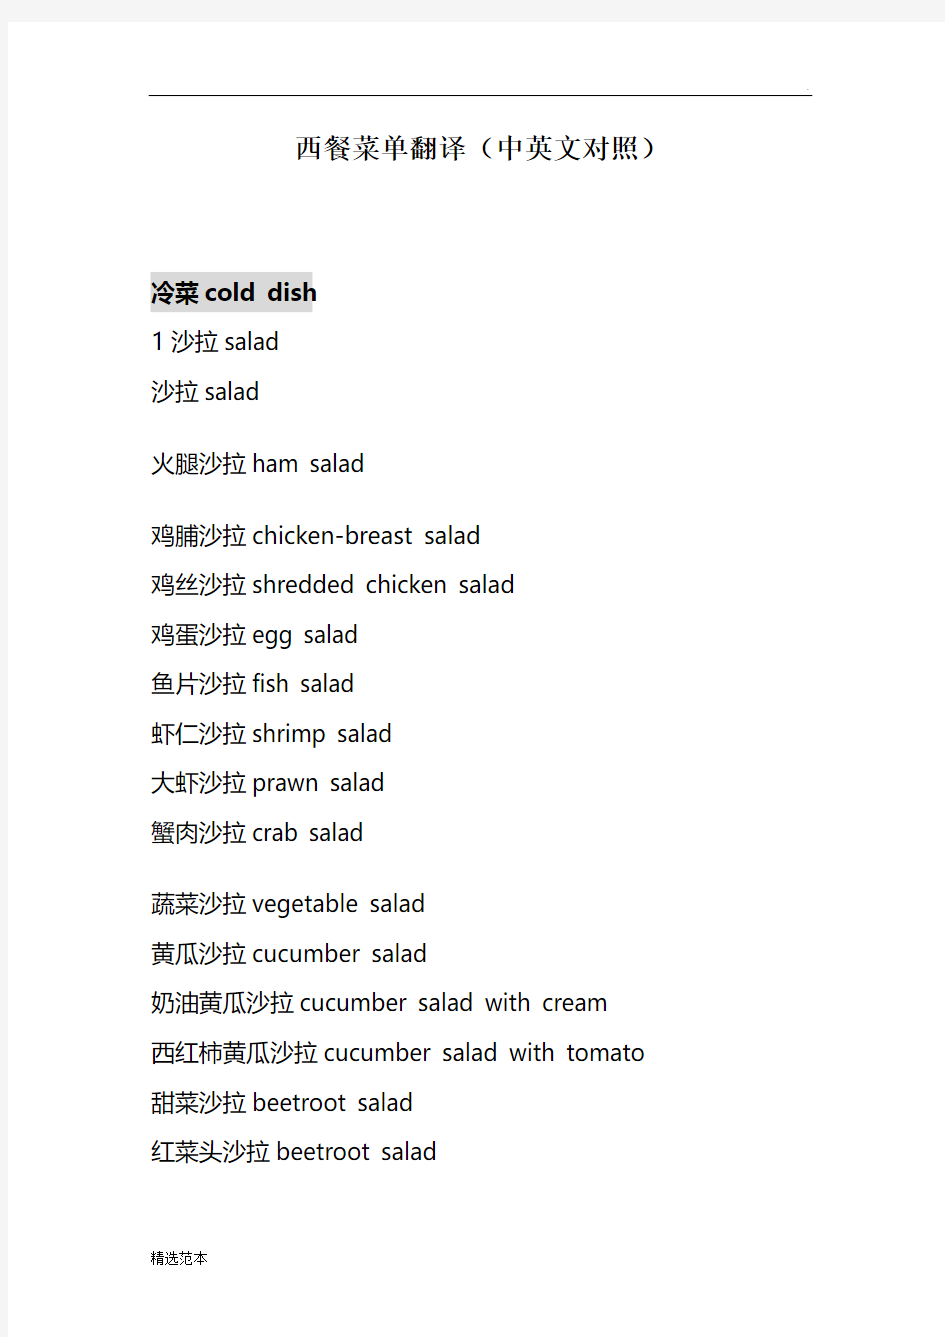 西餐菜单翻译(中英文对照)